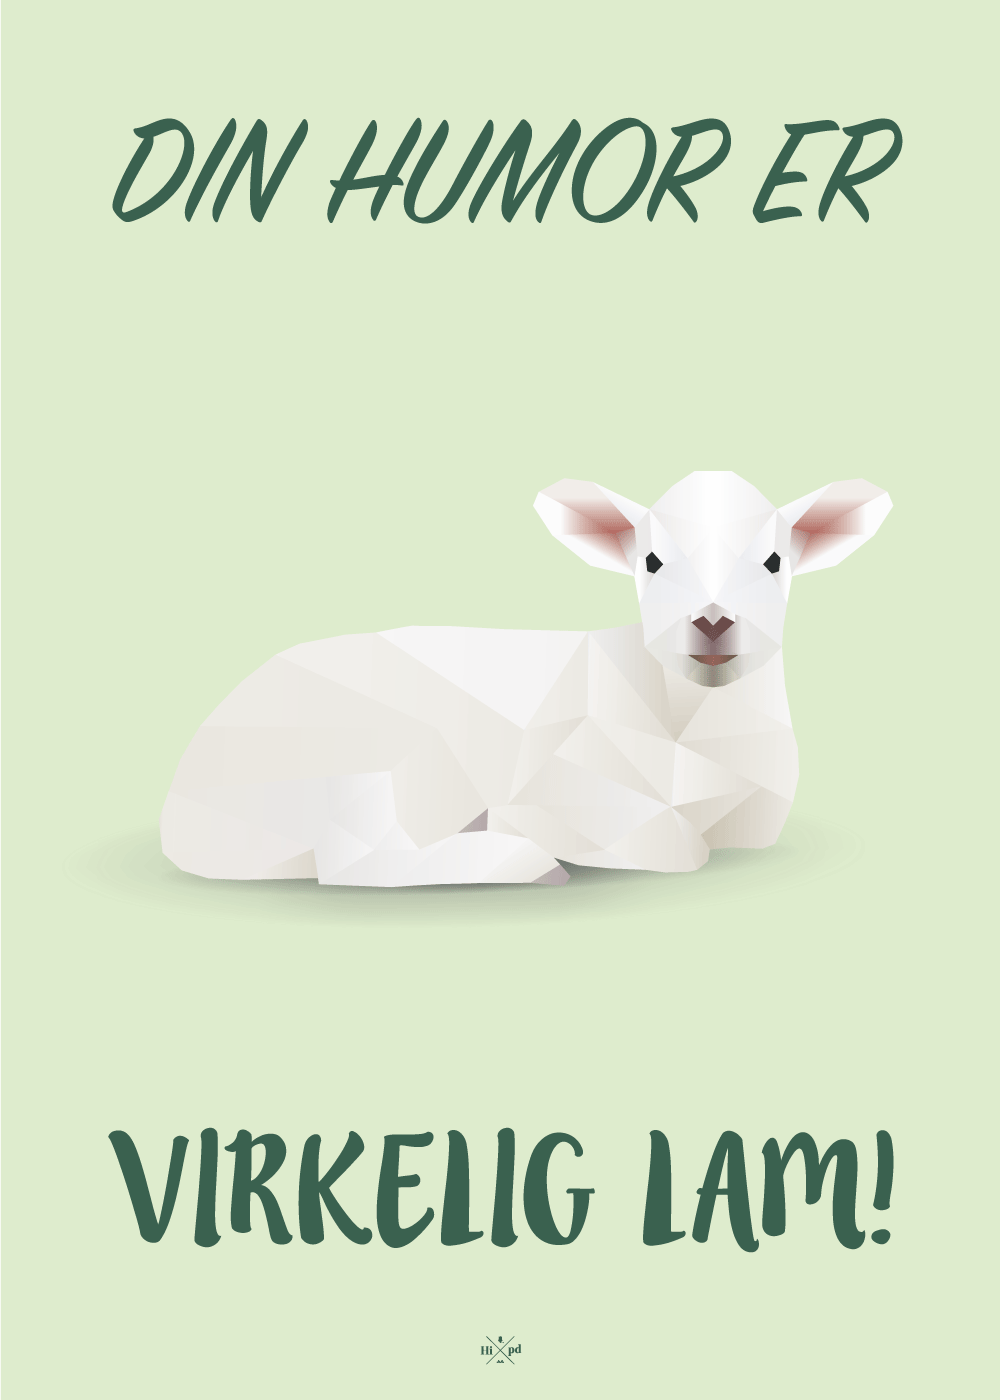 plakat - plakat med ordspillet "Din er lam"